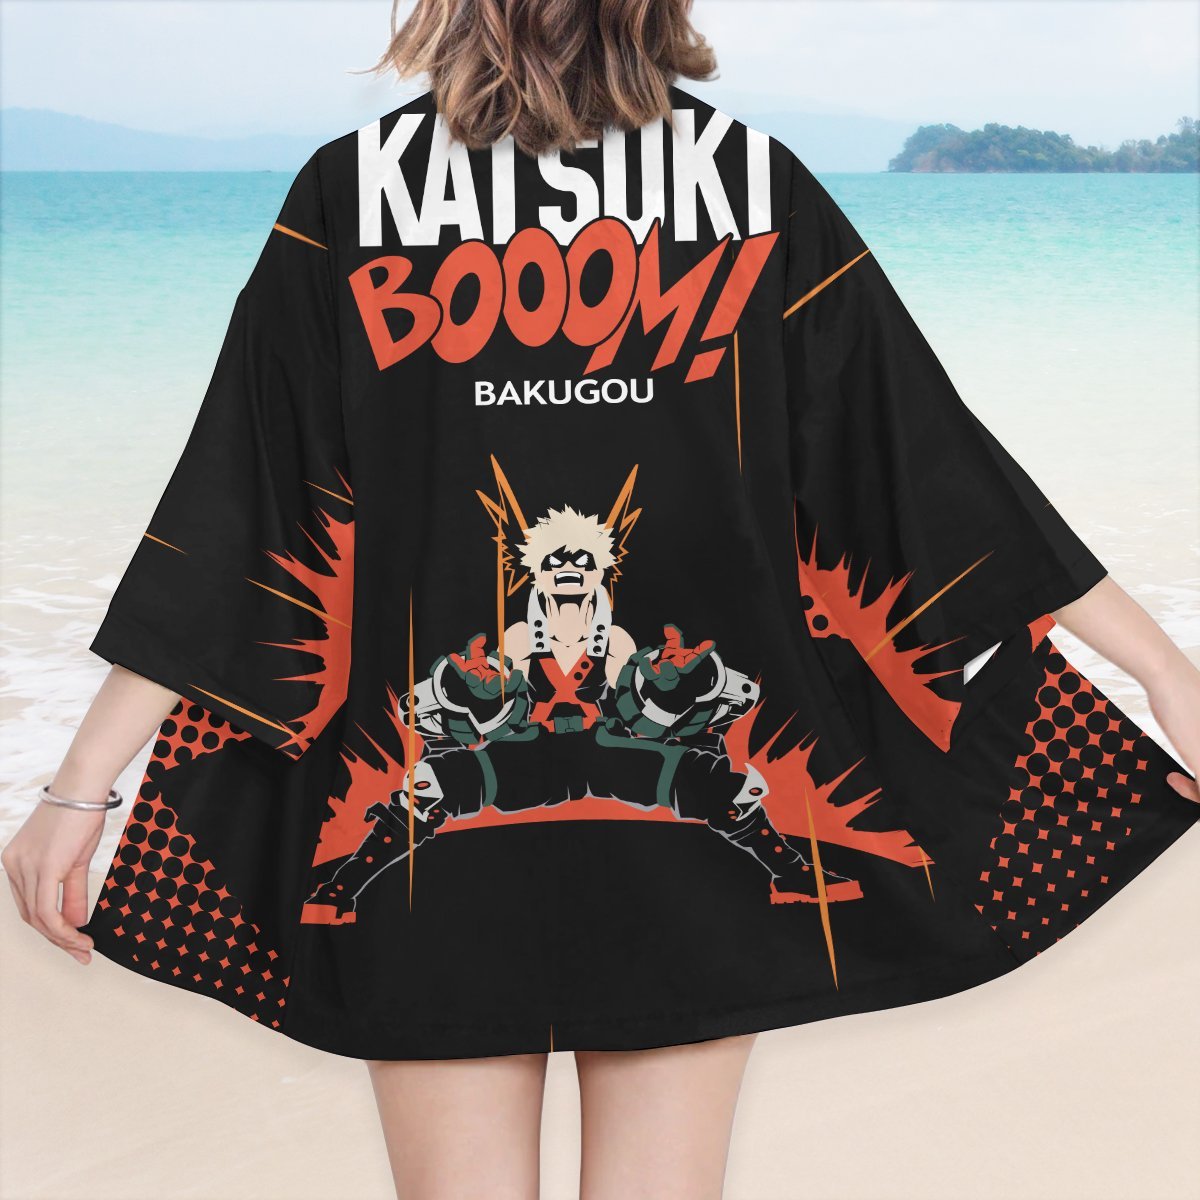 katsuki boom kimono 558802 - Otaku Treat